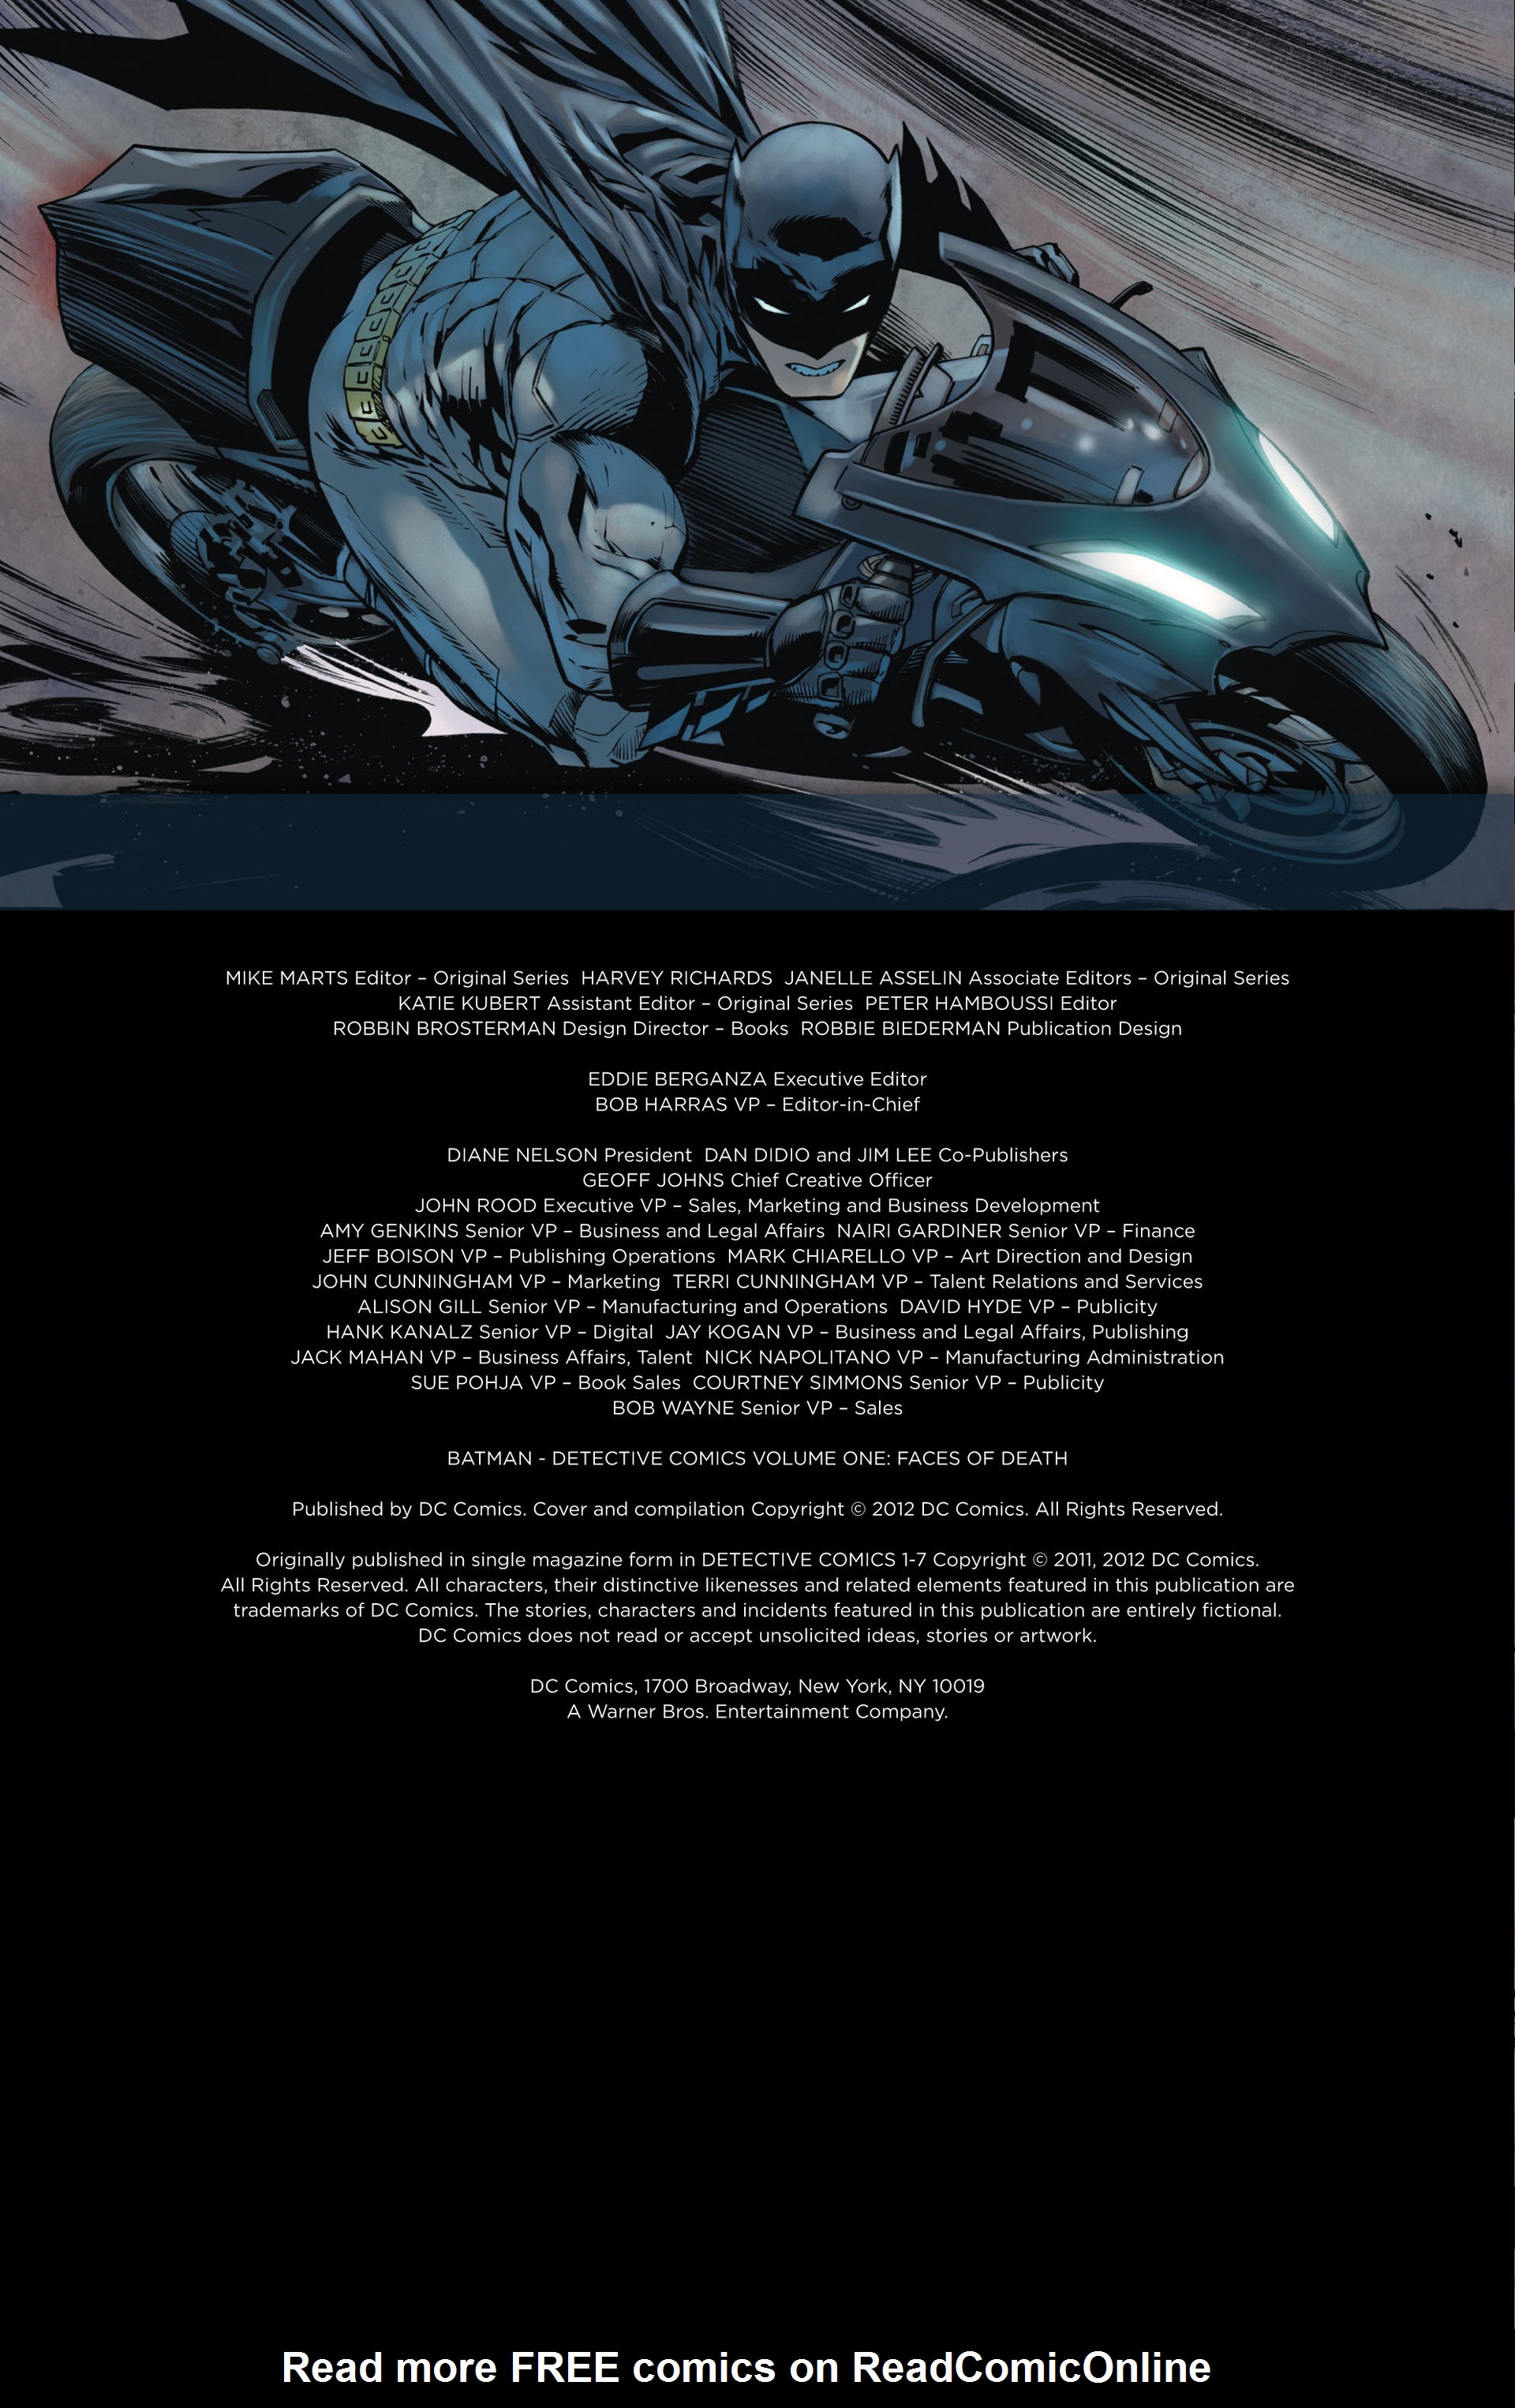 Read online Batman: Detective Comics comic -  Issue # TPB 1 - 4